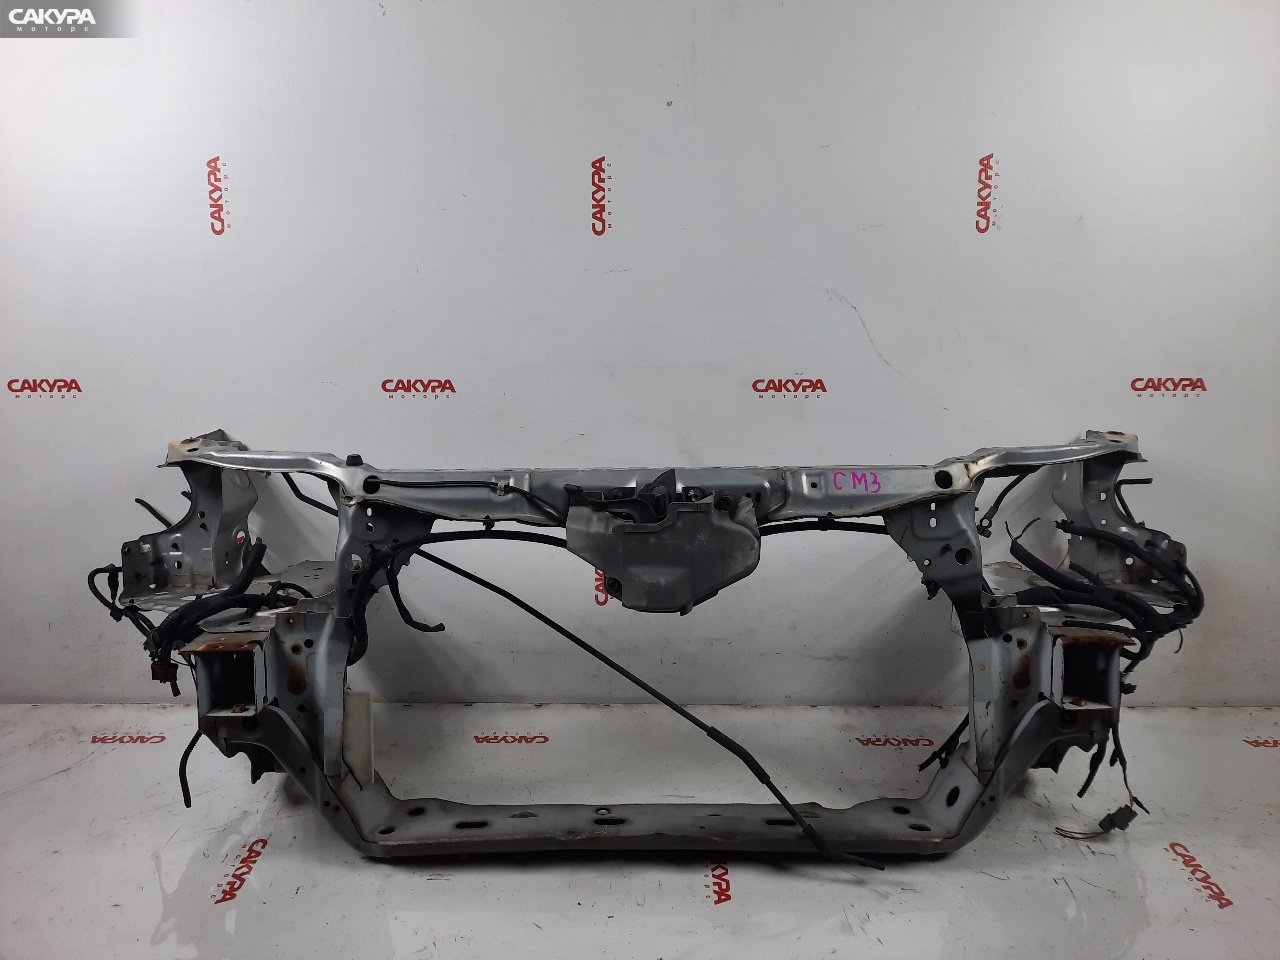 Рамка радиатора Honda Accord Wagon CM3 K24A: купить в Сакура Красноярск.